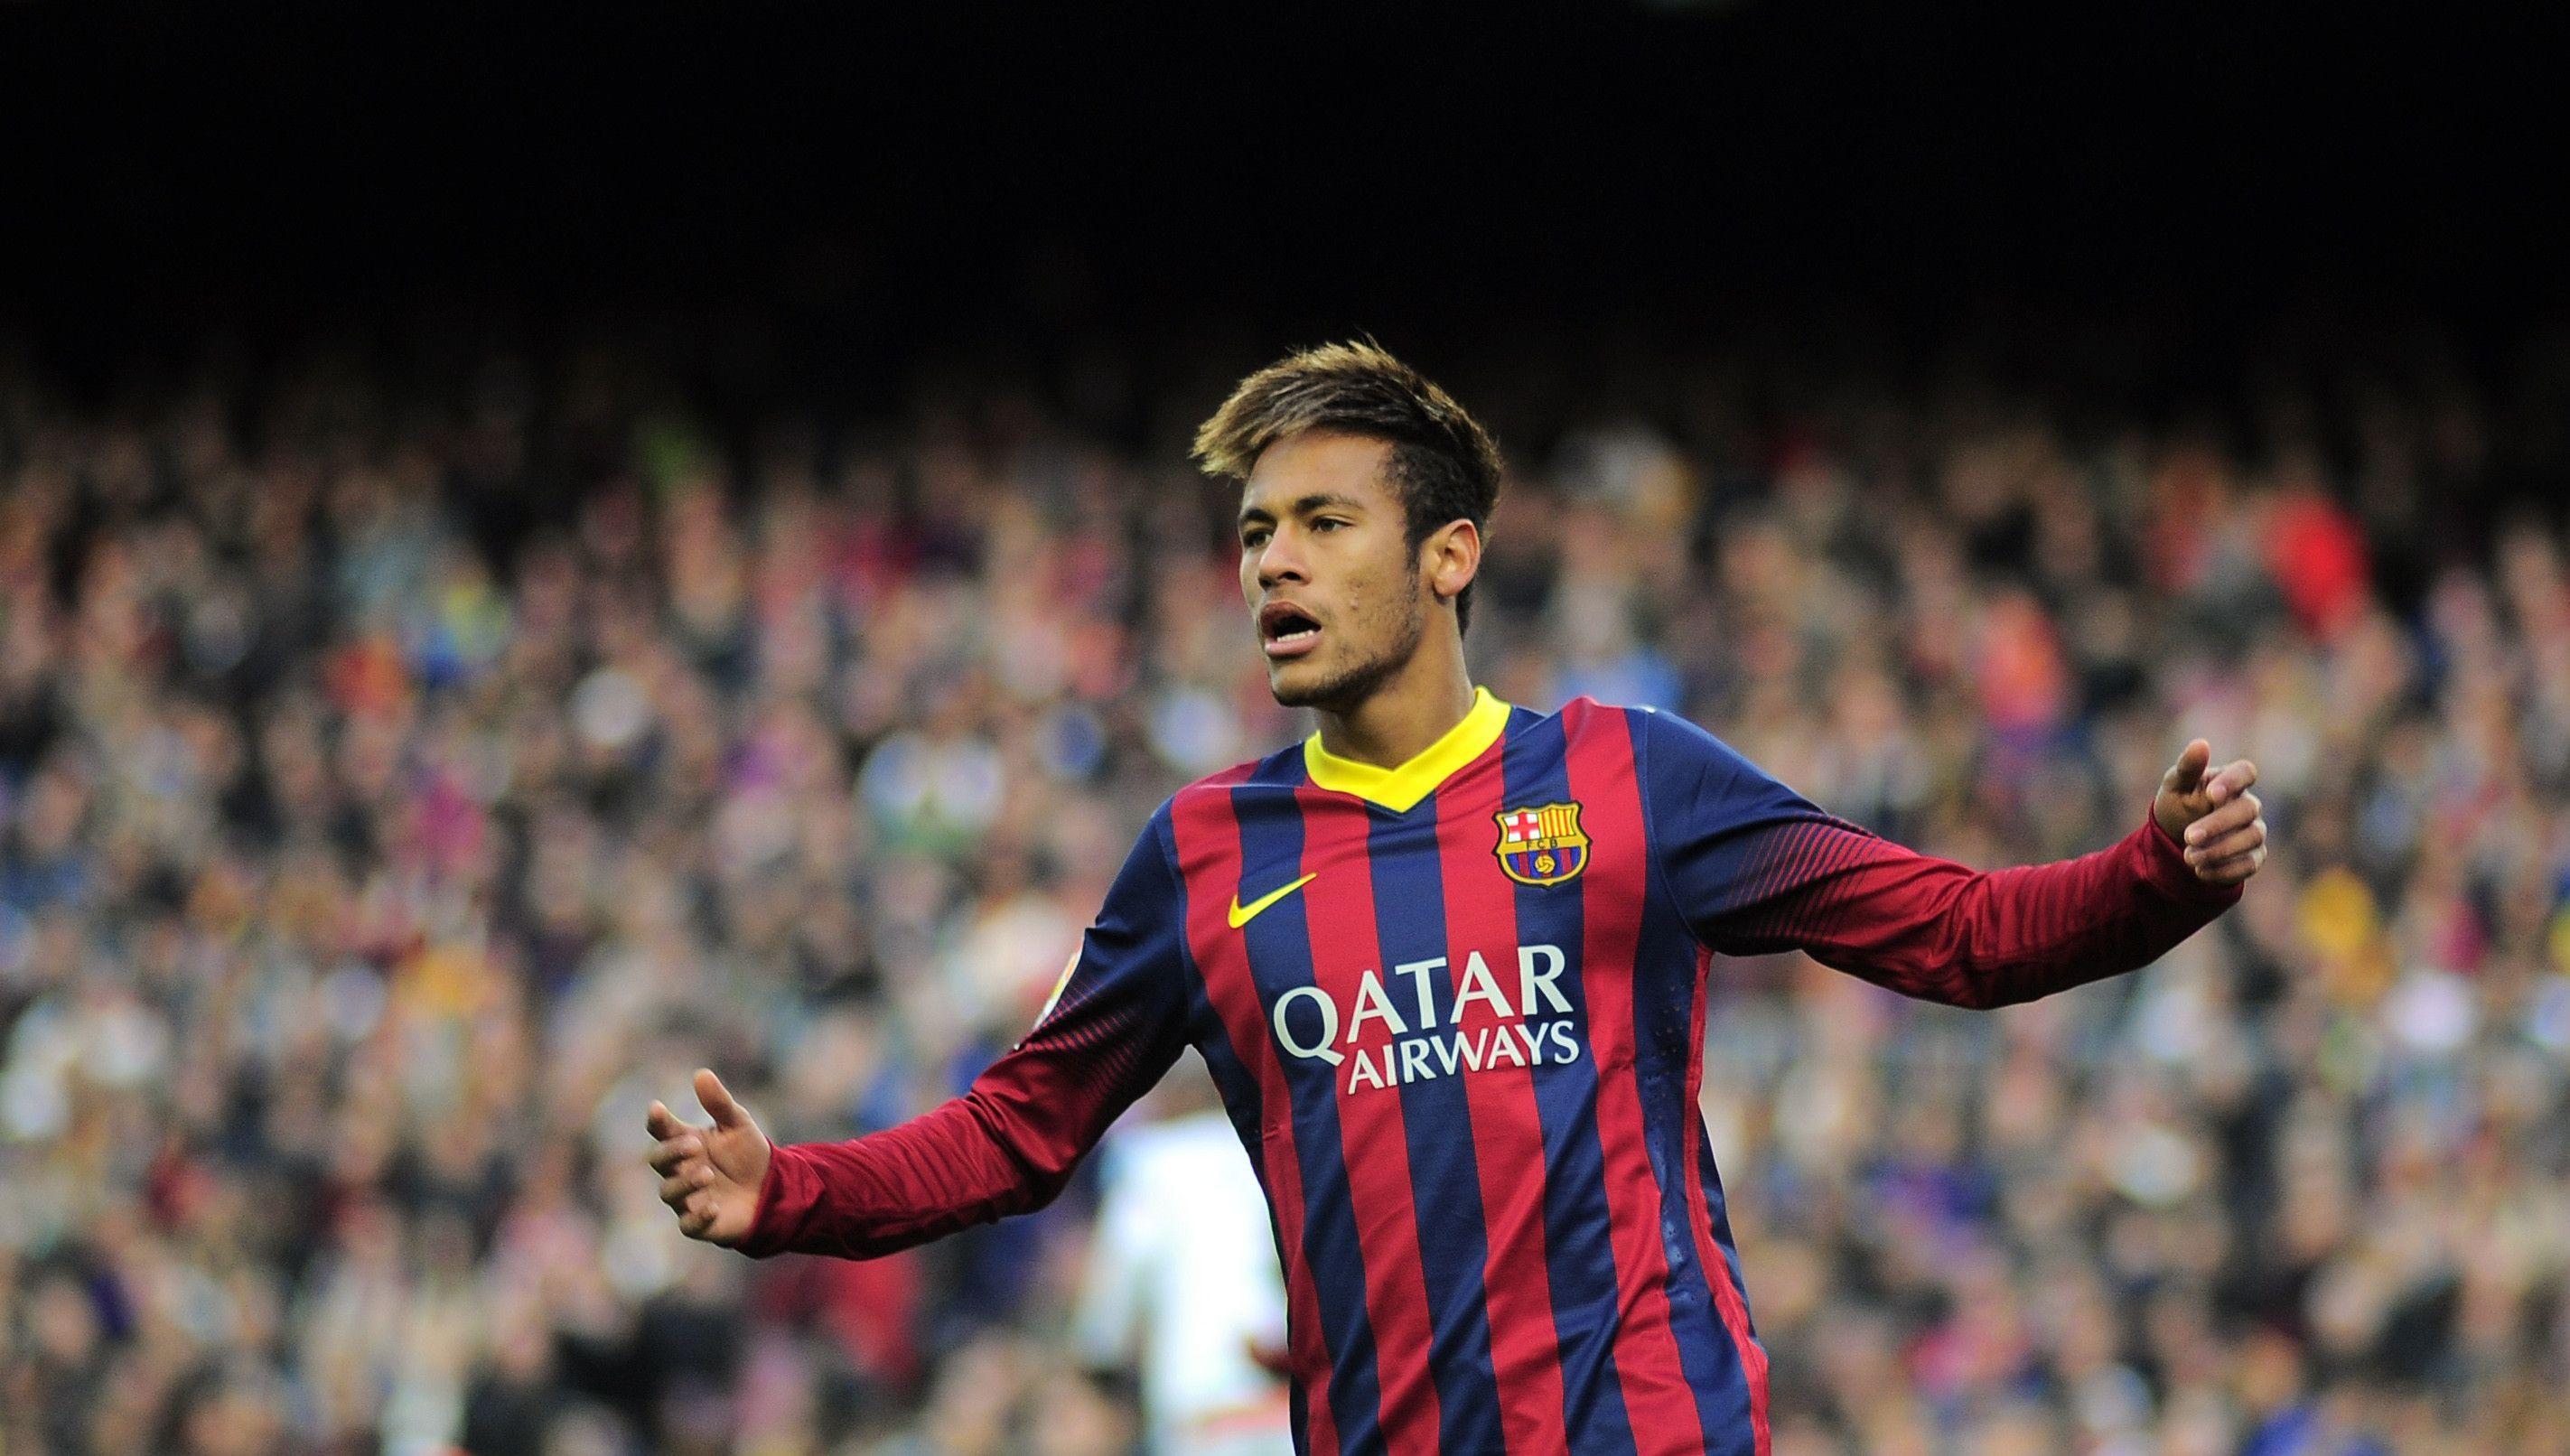 Neymar Wallpaper 2015 HD